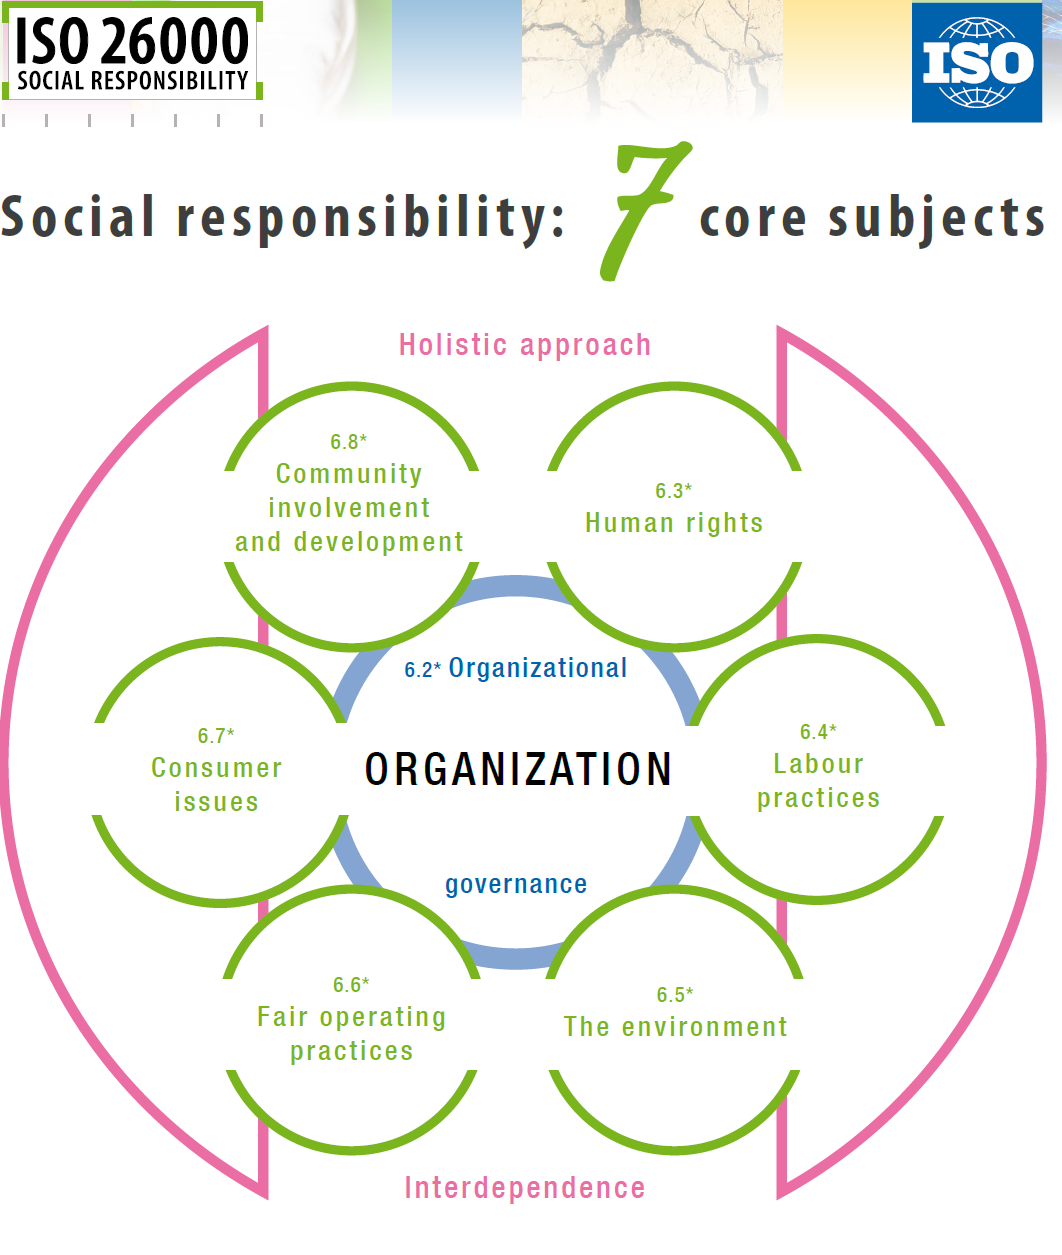 Εικόνα 1 : Οι εφτά παράγοντες για τη διαχείριση της εταιρικής κοινωνικής ευθύνης (ISO, 2015) Επεξήγηση 6.2. Οργανωτική διακυβέρνηση, 6.3. Ανθρώπινα δικαιώματα, 6.4. Εργασιακές πρακτικές, 6.5. Το περιβάλλον, 6.